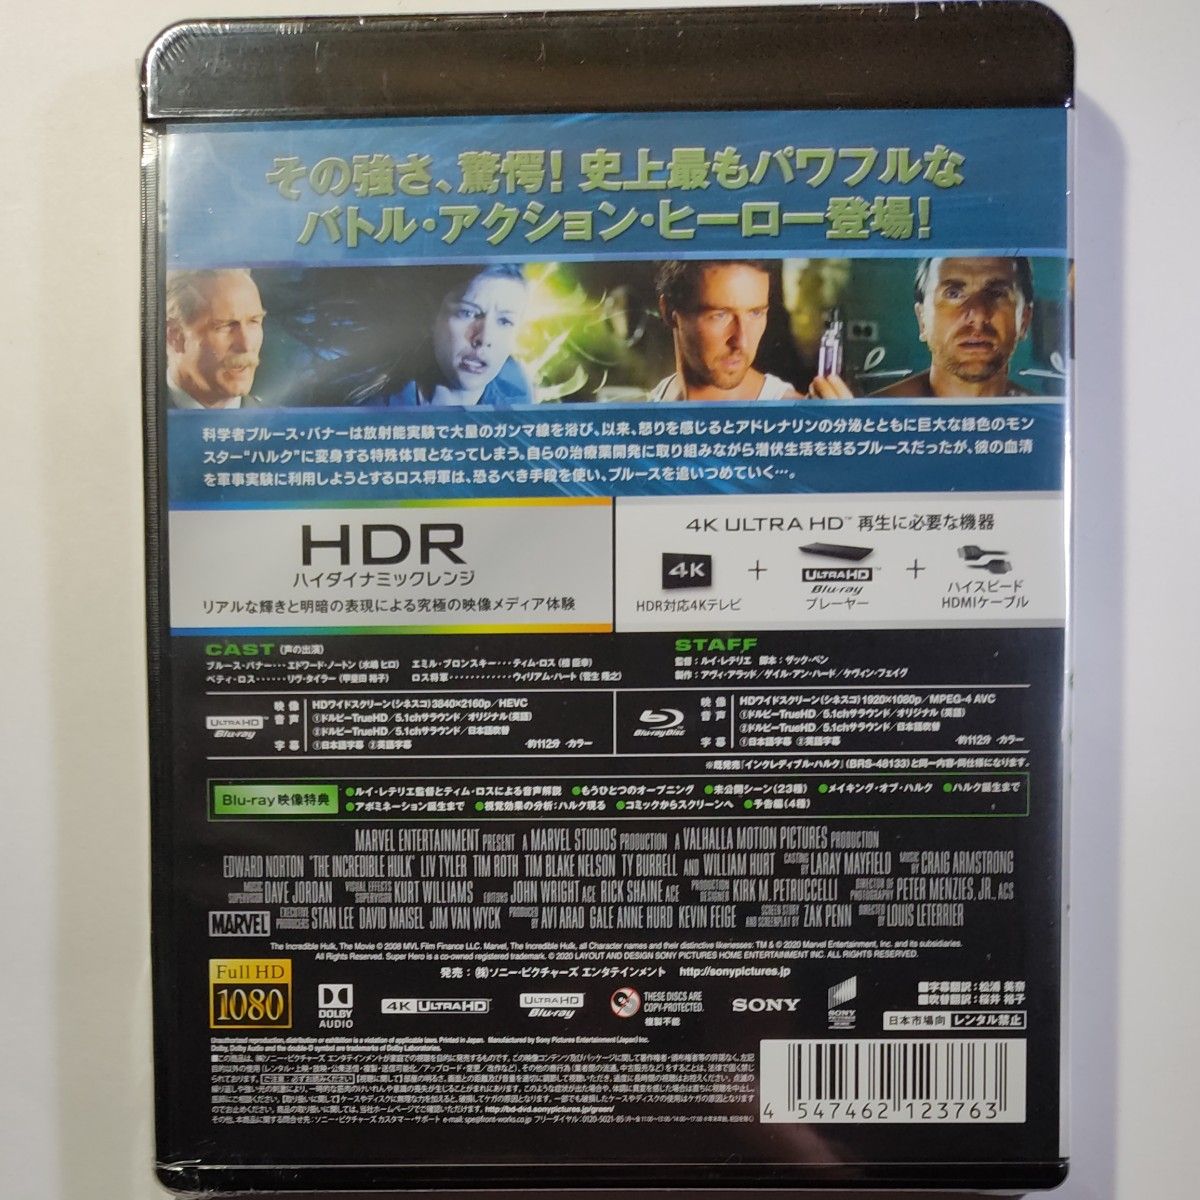 ハルク インクレディブルハルク 4K ULTRA HD&ブルーレイセット [2枚組] 2作品セット 新品未開封